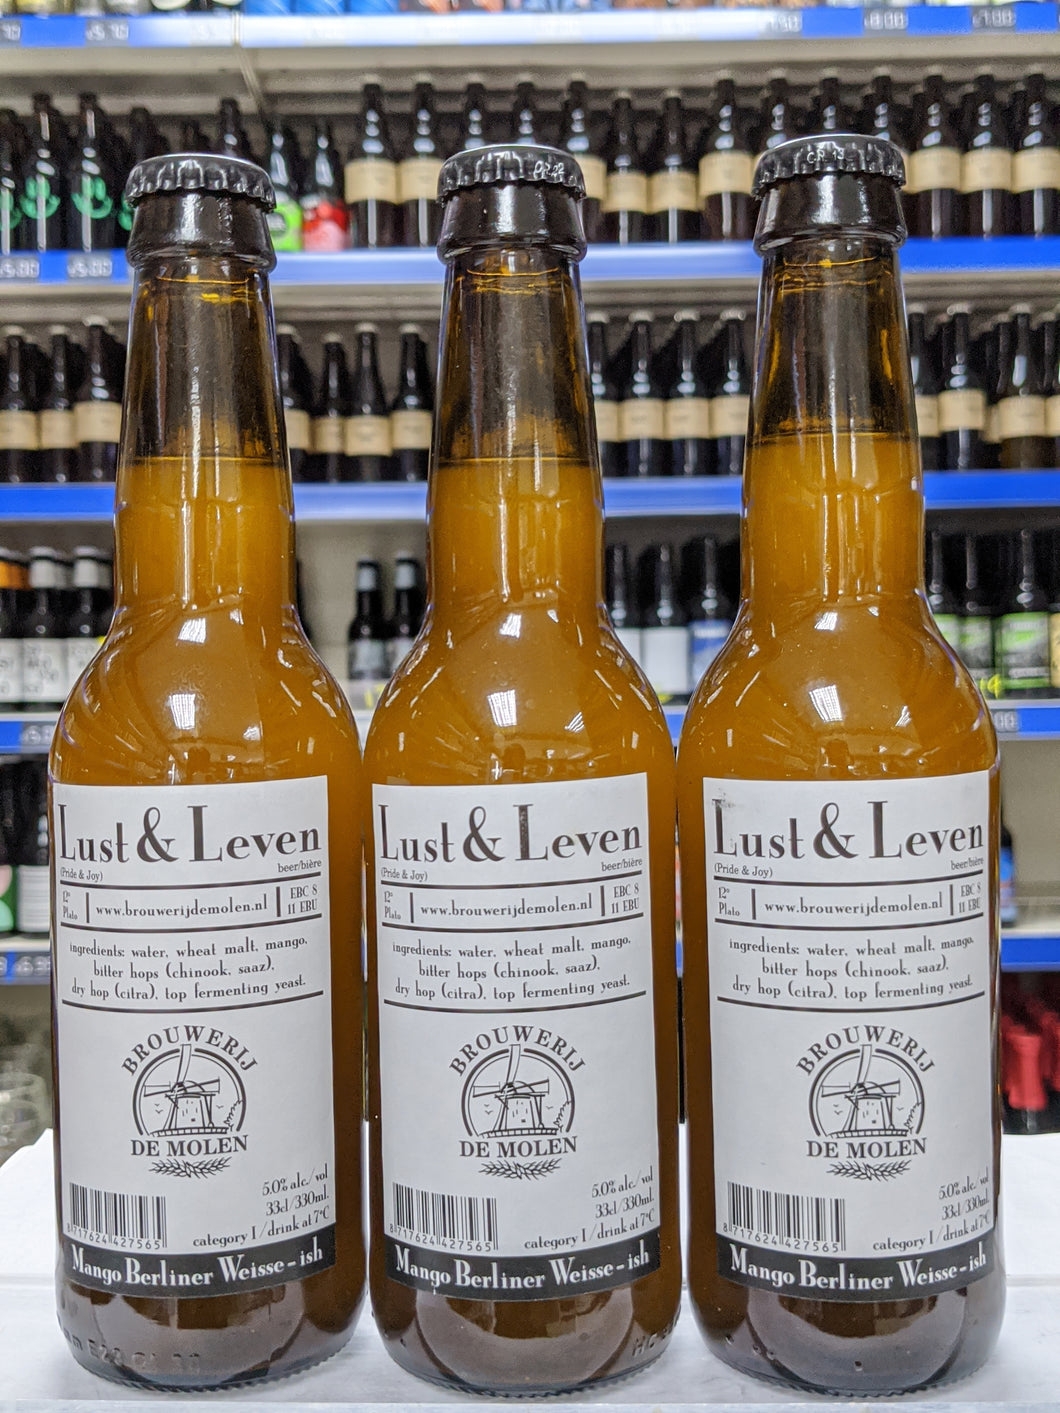 Lust & Leven - Brouwerij De Molen - Mango Berliner Weisse, 5%, 330ml Bottle